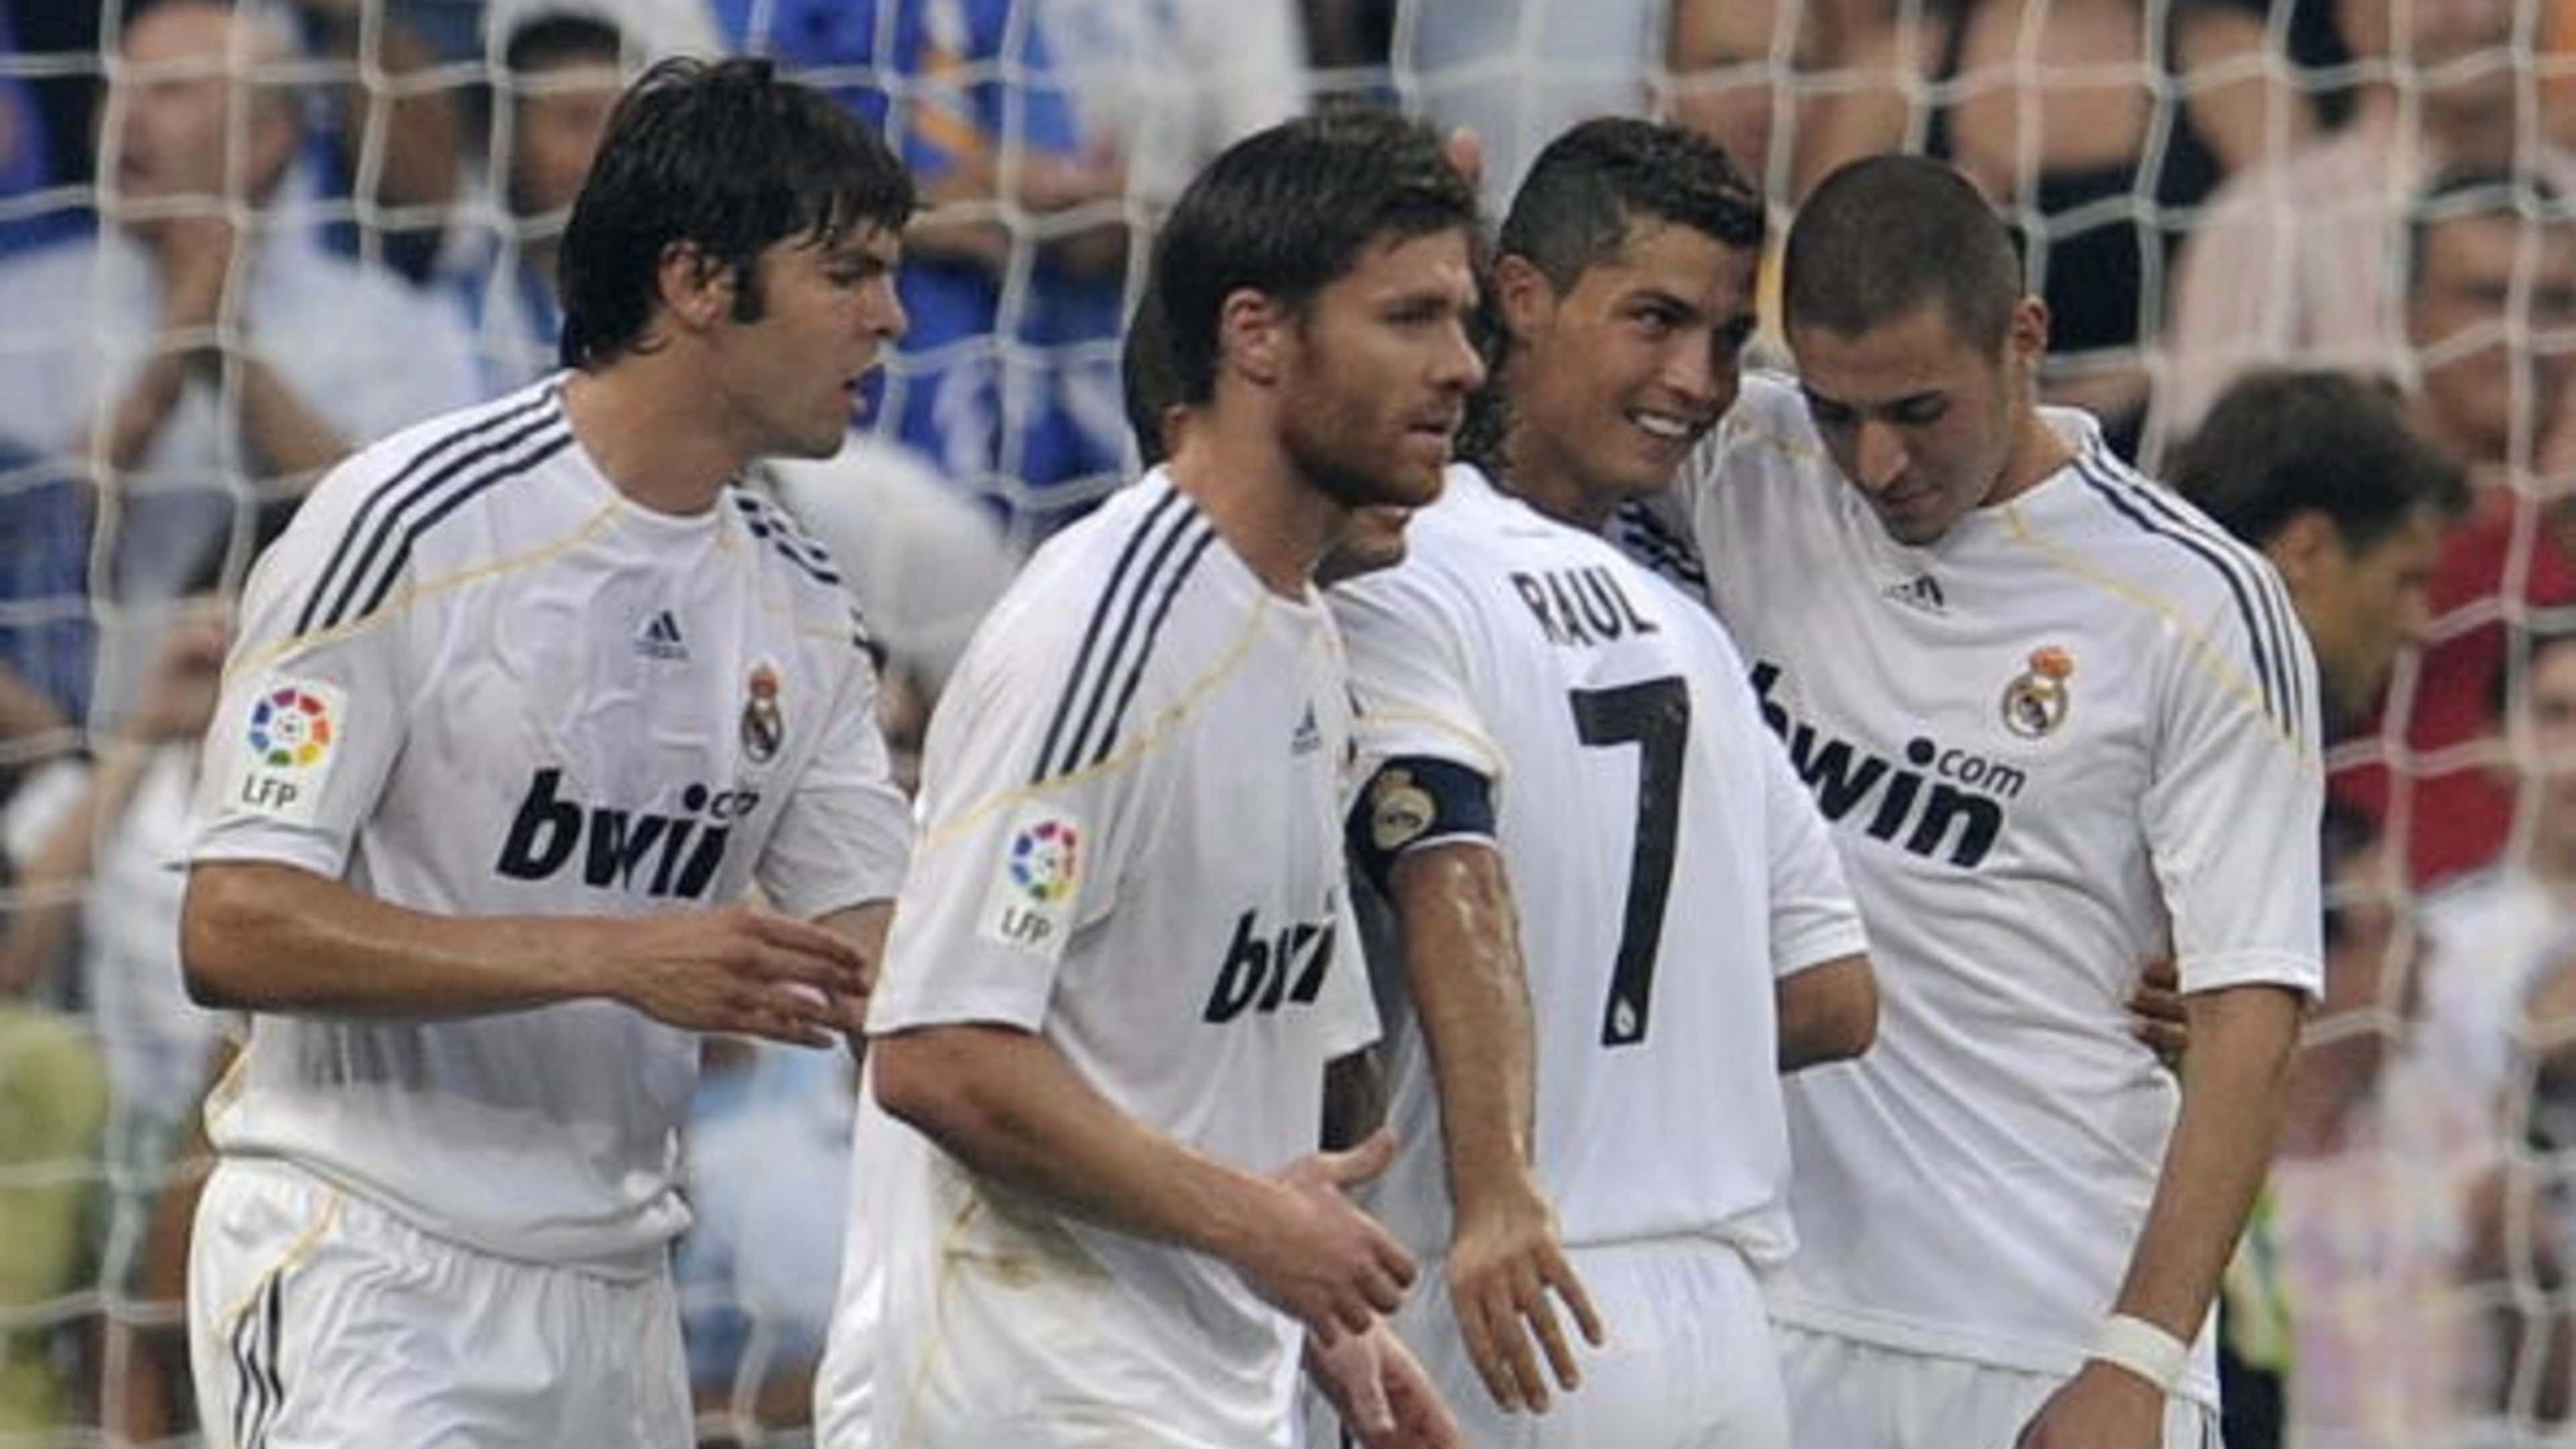 10 jogadores que mais jogaram a Champions pelo Real Madrid